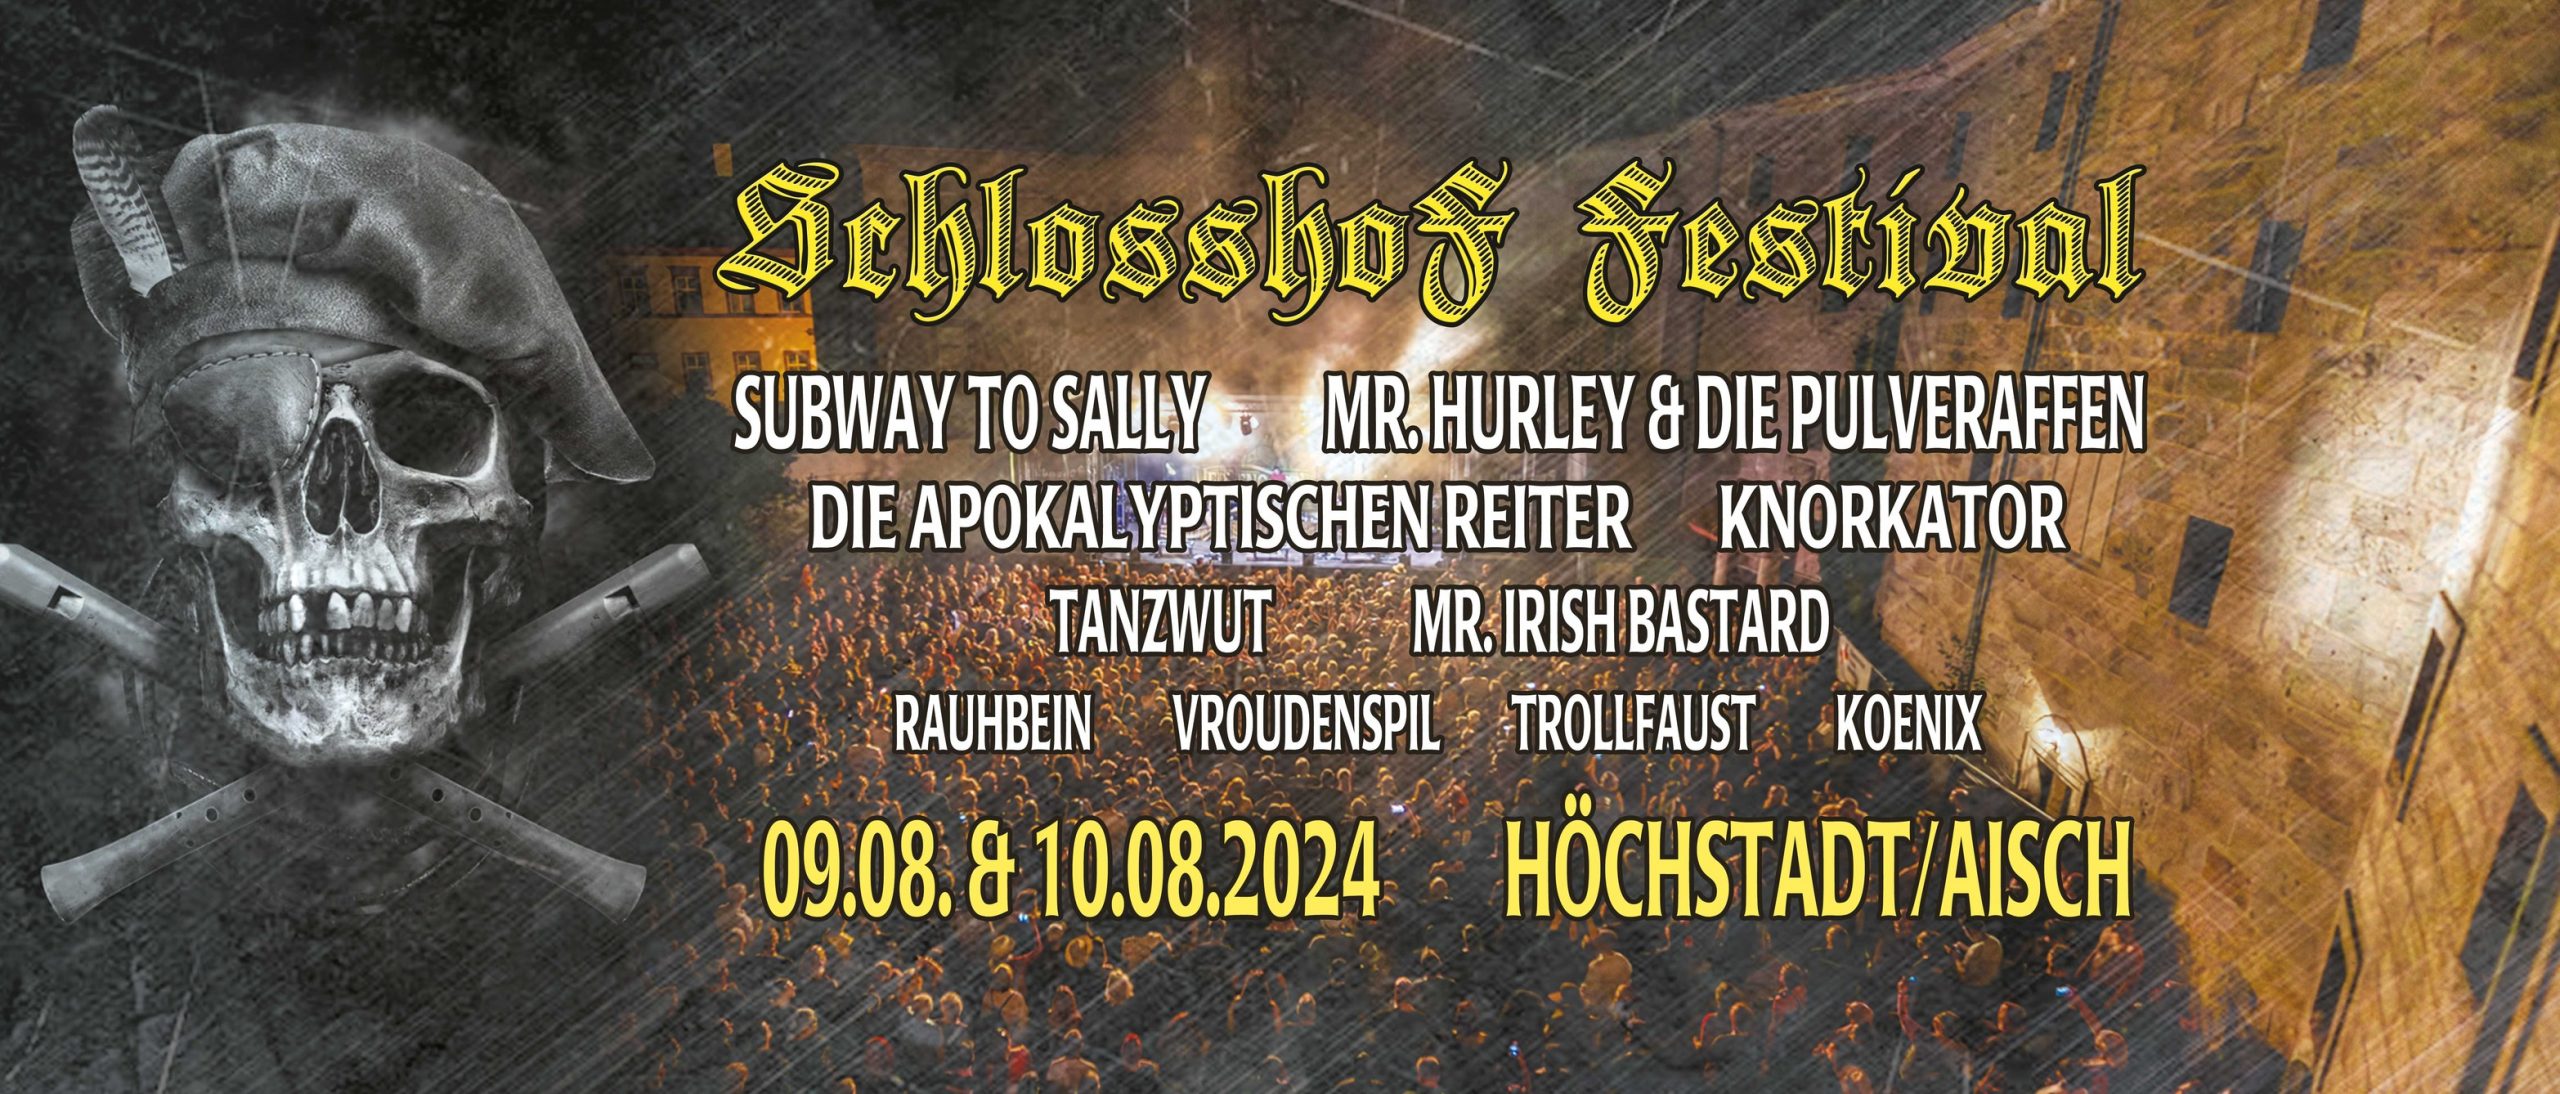 Schlosshof Festival 2024